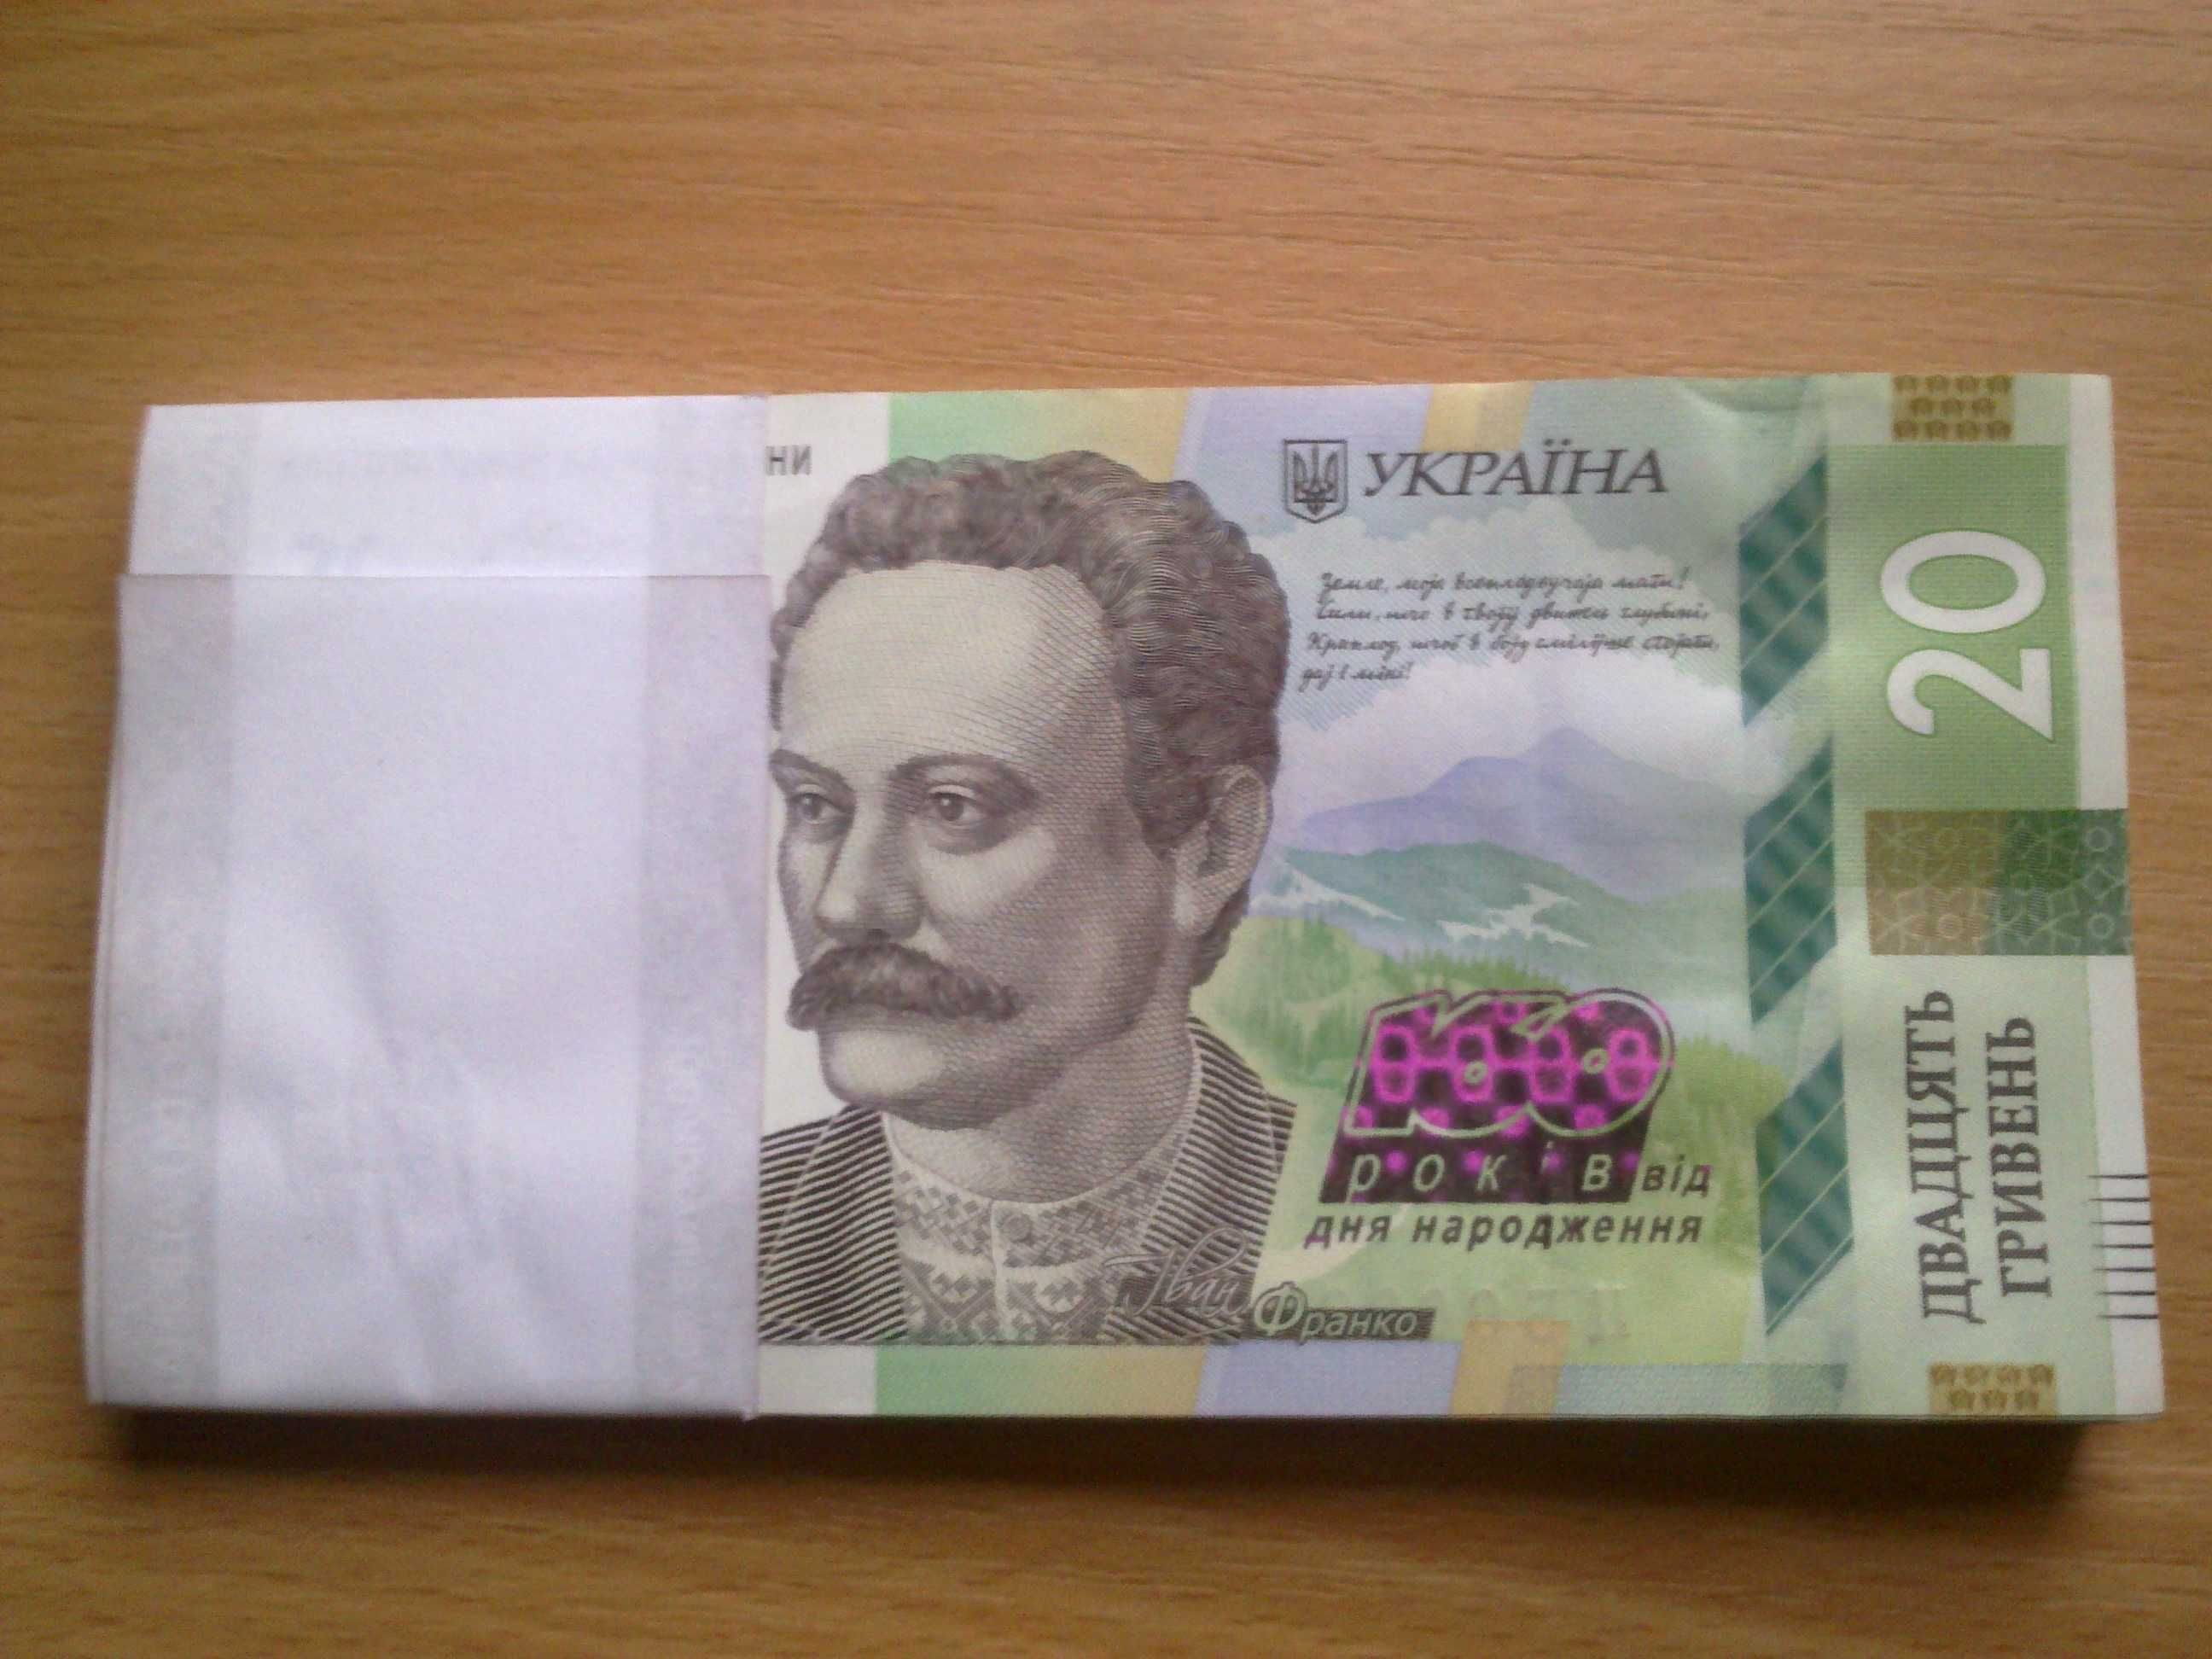 50 гривень гривен. Подпись Гетьман